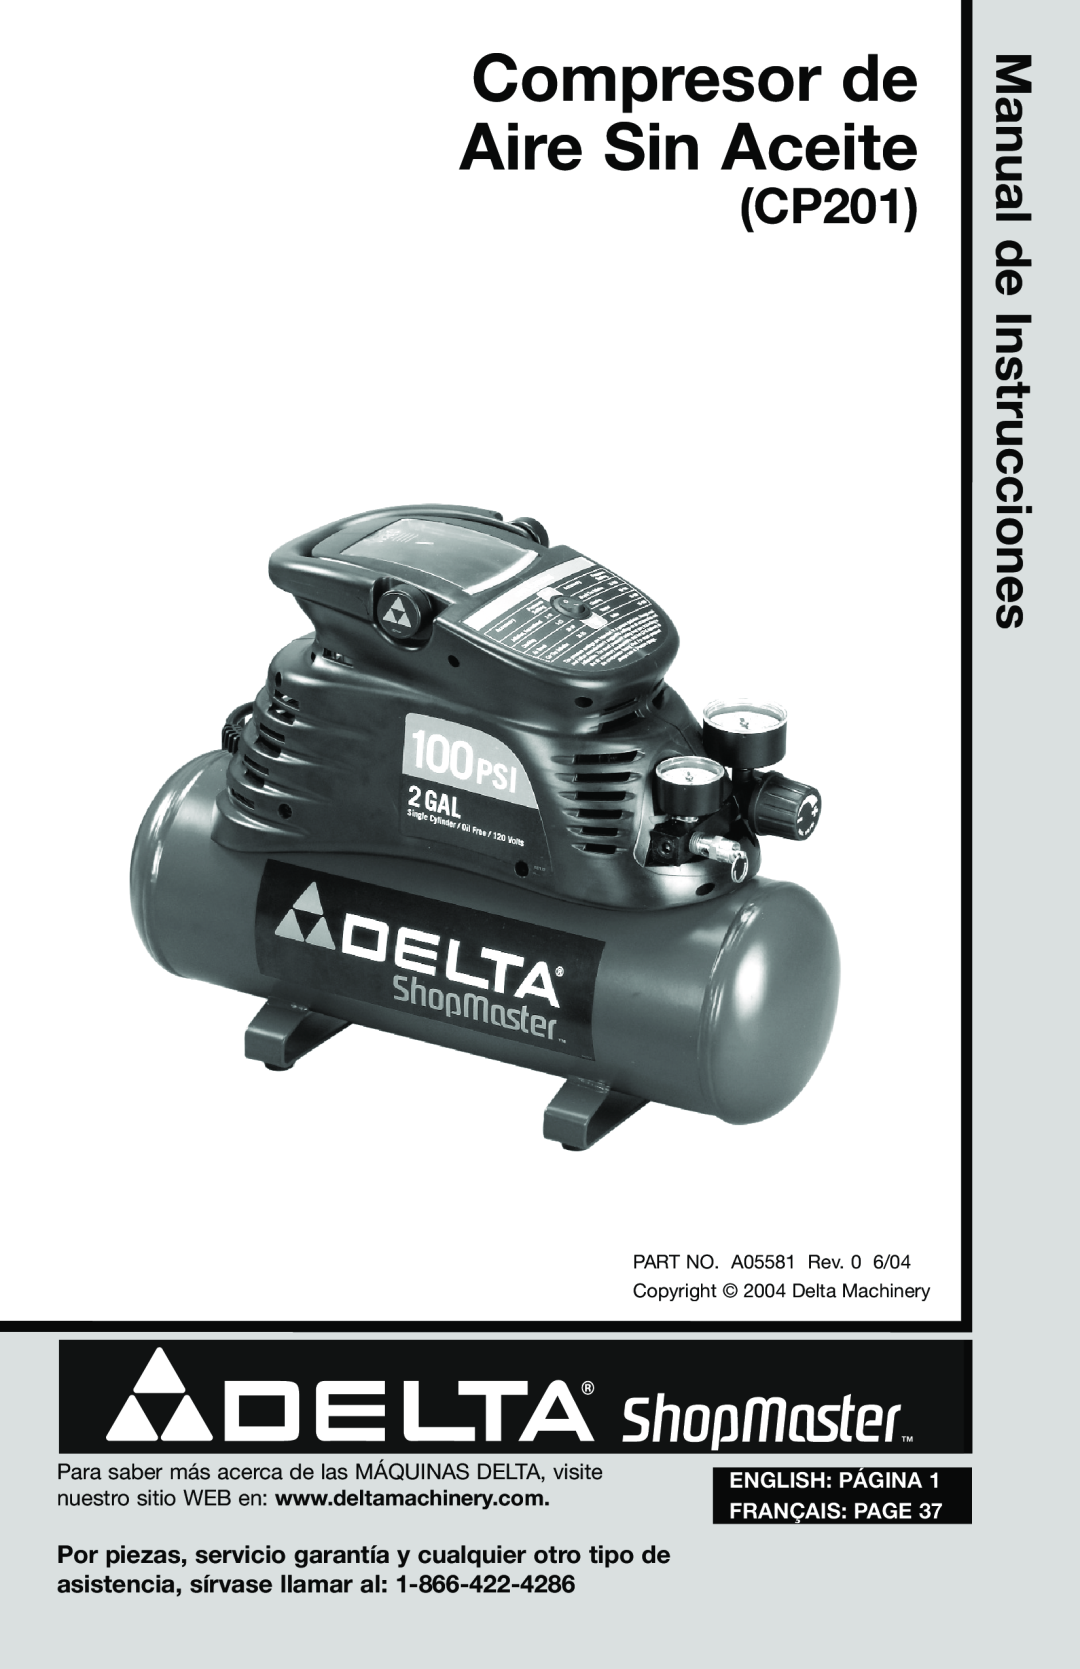 Delta CP201, A05581 instruction manual Manual de Instrucciones, Compresor de Aire Sin Aceite, English Página, Français Page 